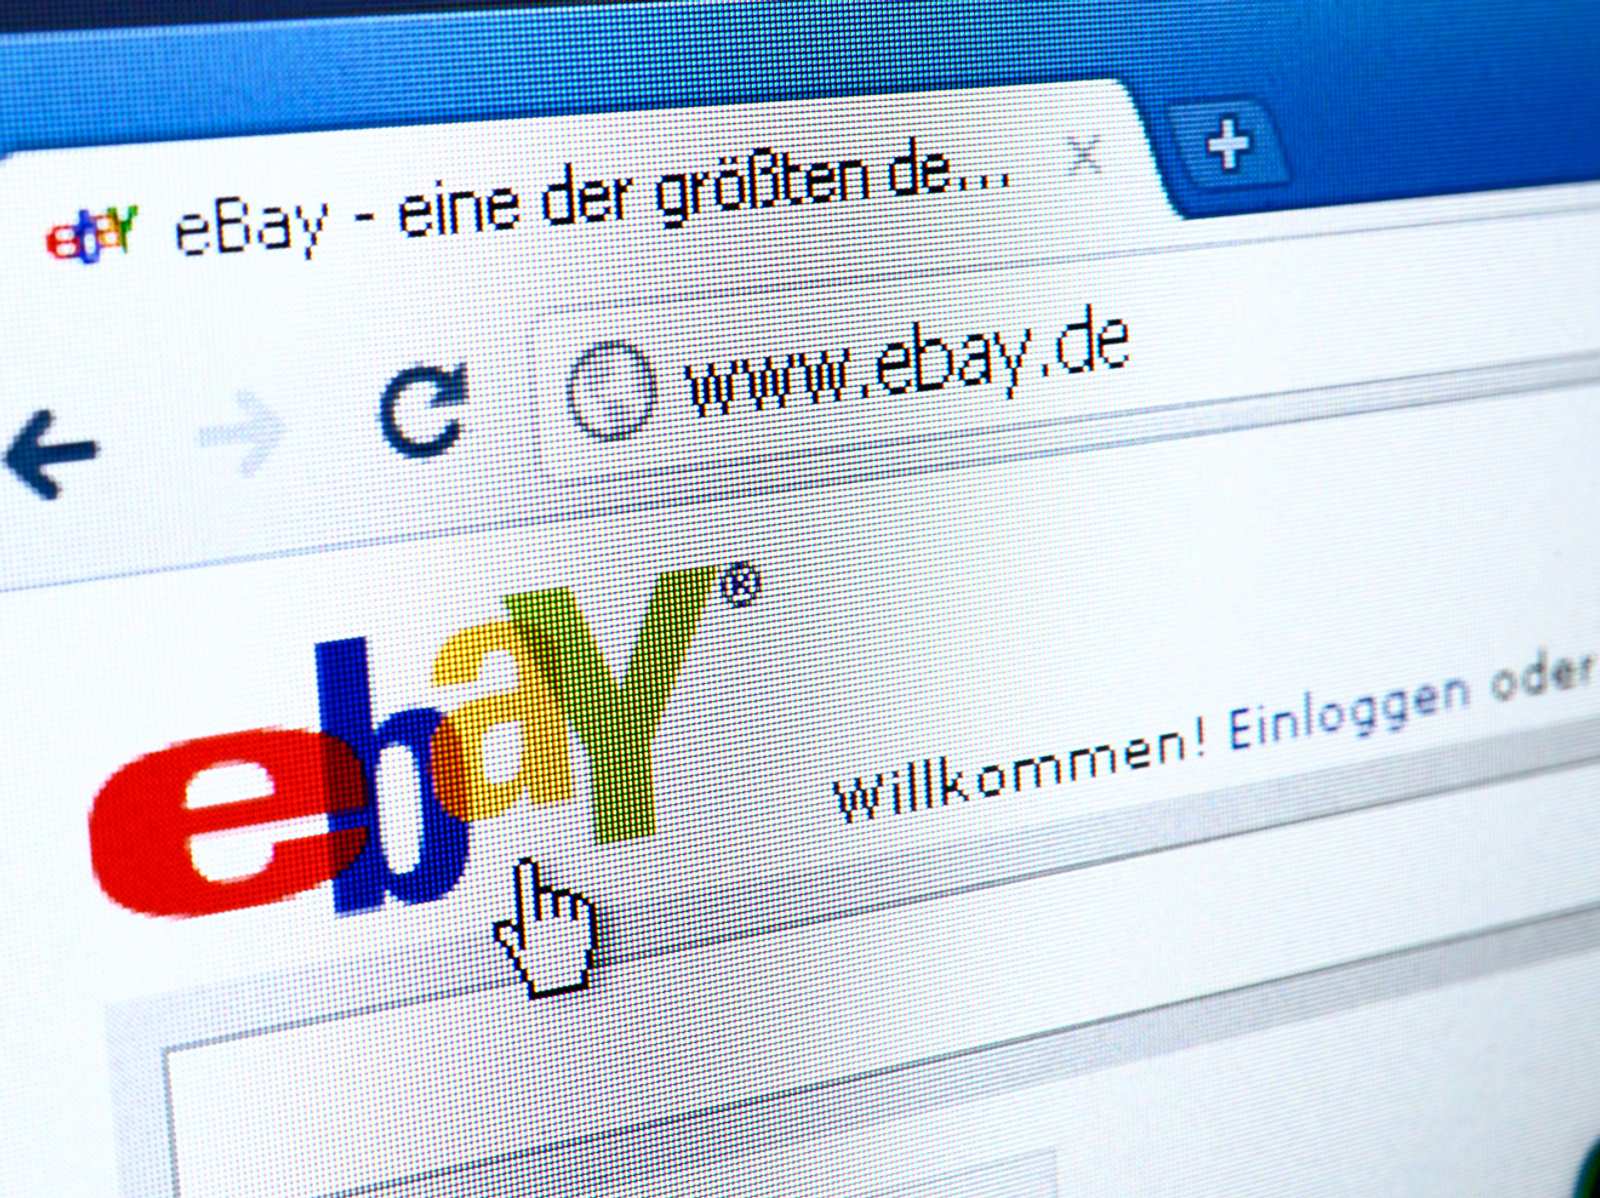 Für ebay sex kleinanzeigen Ebay